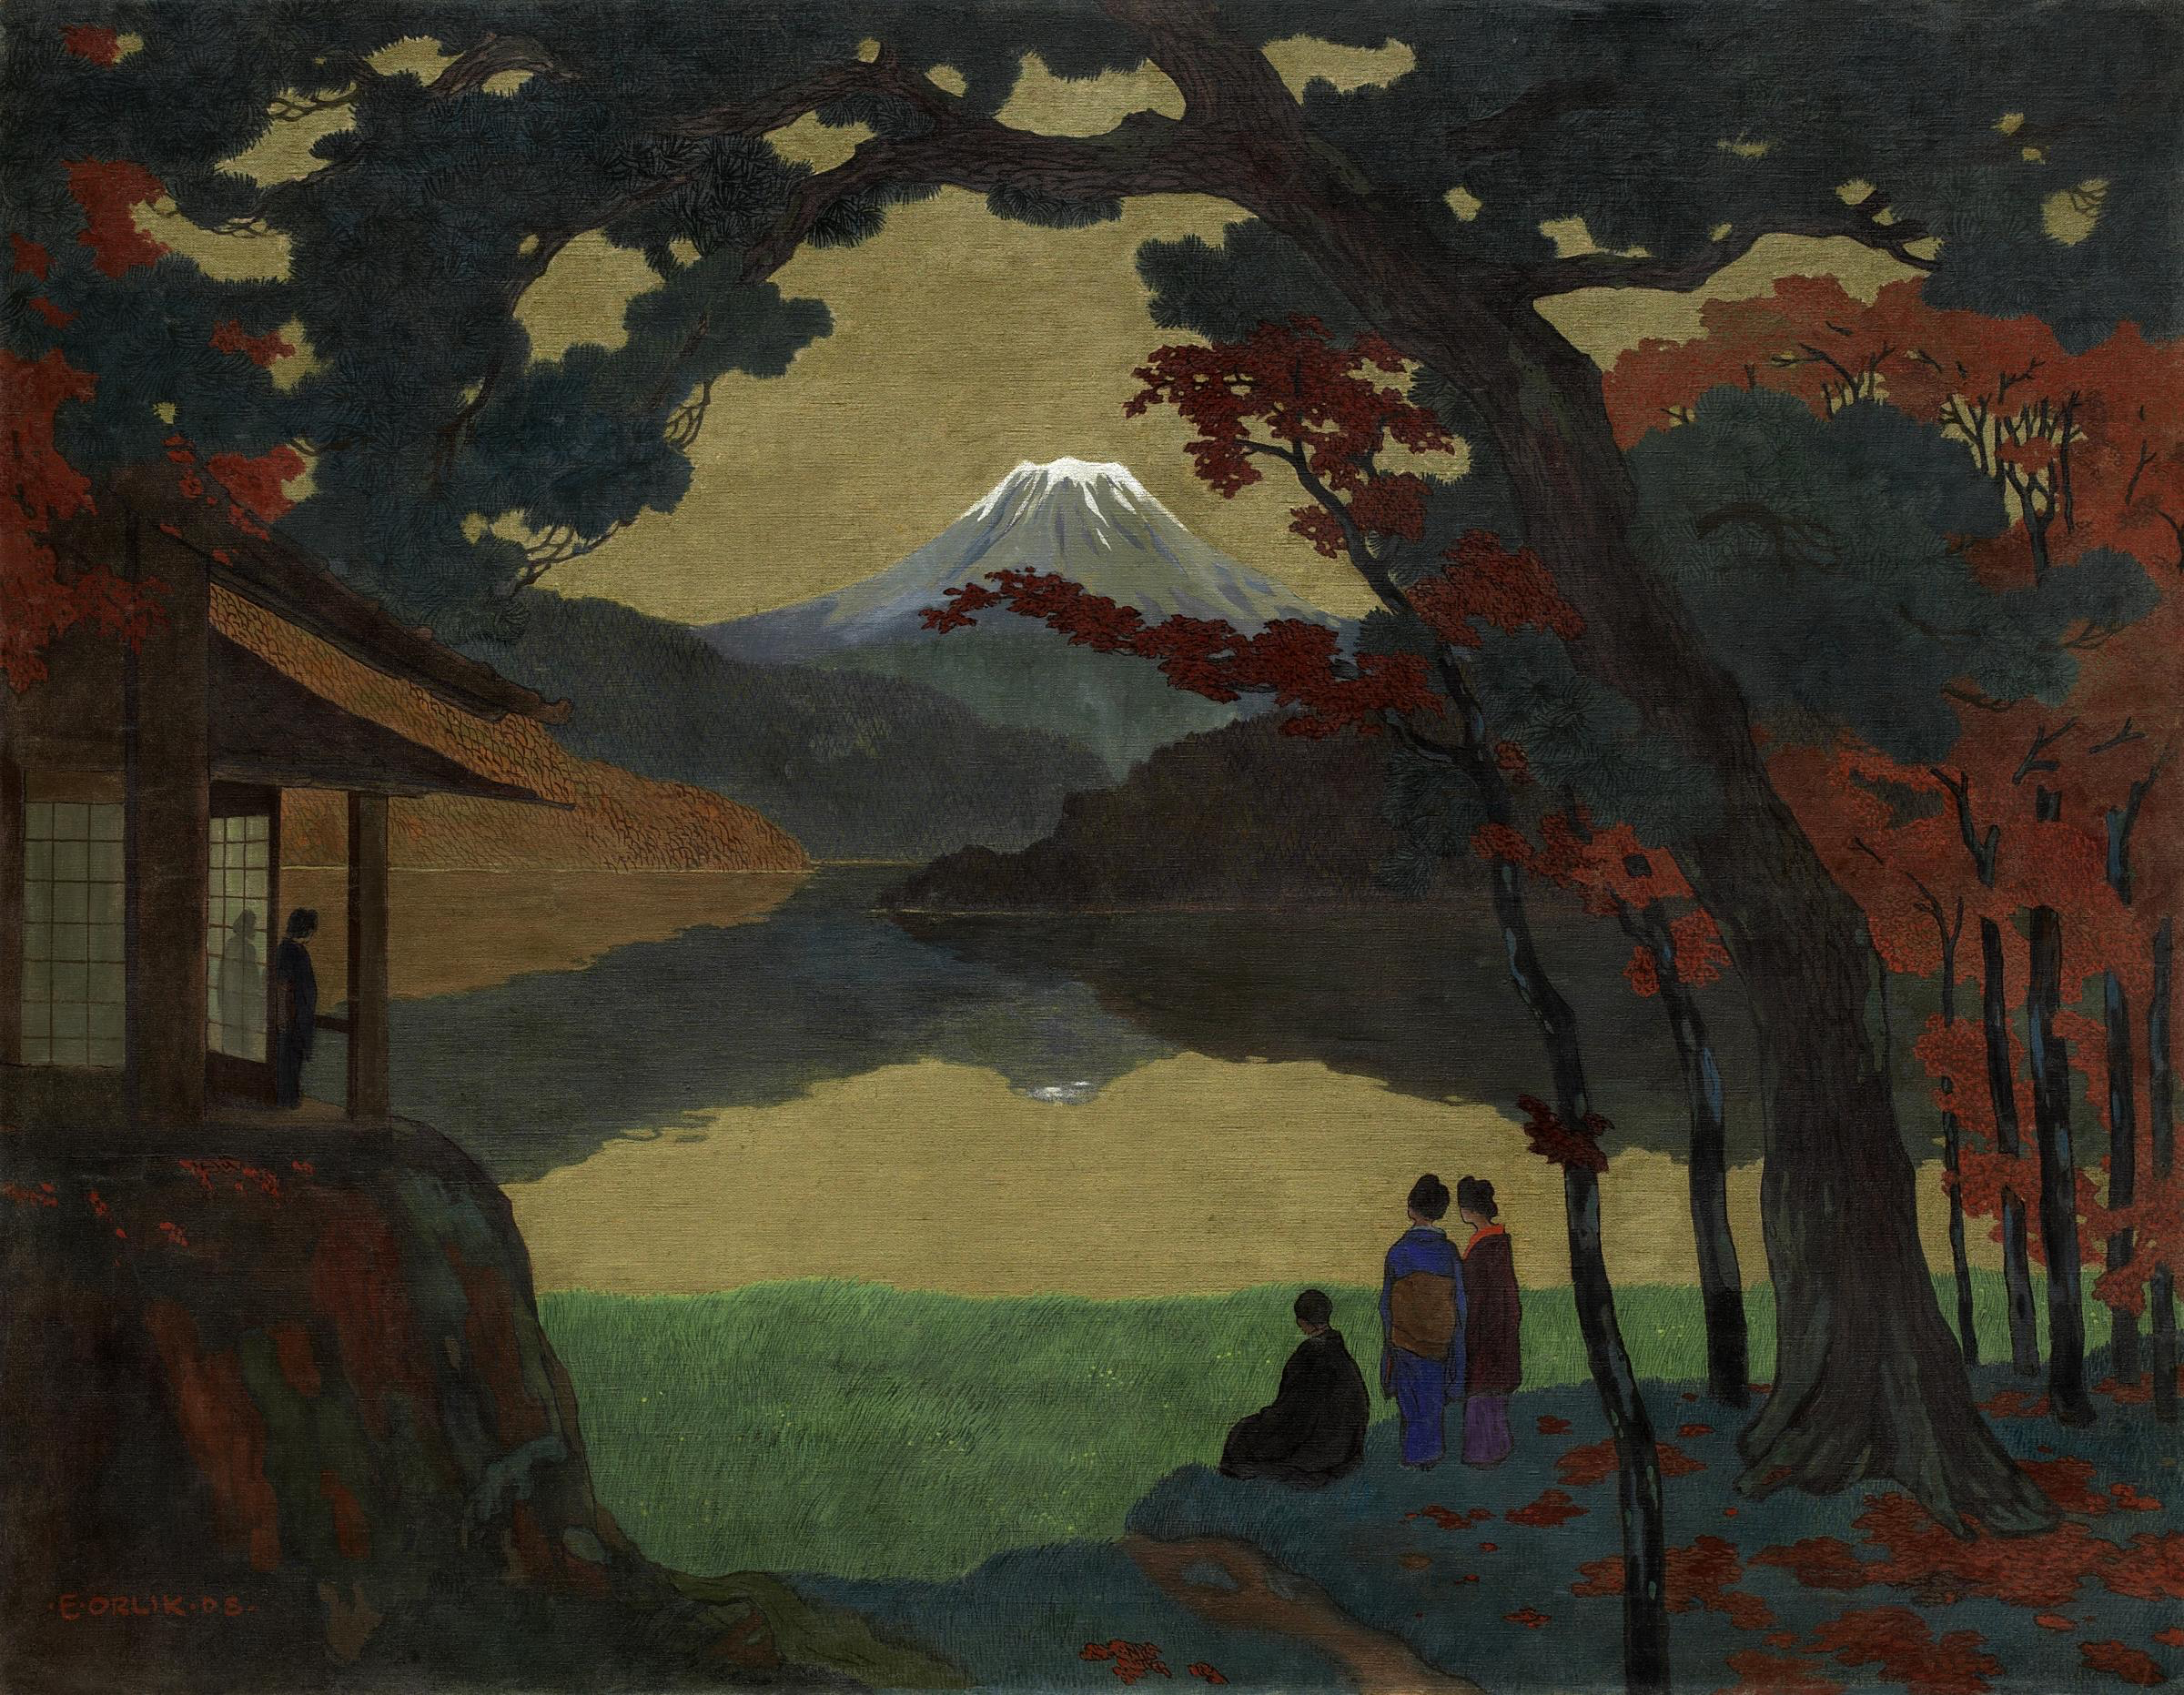 멀리 후지산이 보이는 풍경 by Emil Orlik - 1908년 - 120.5 x 154.5 cm 